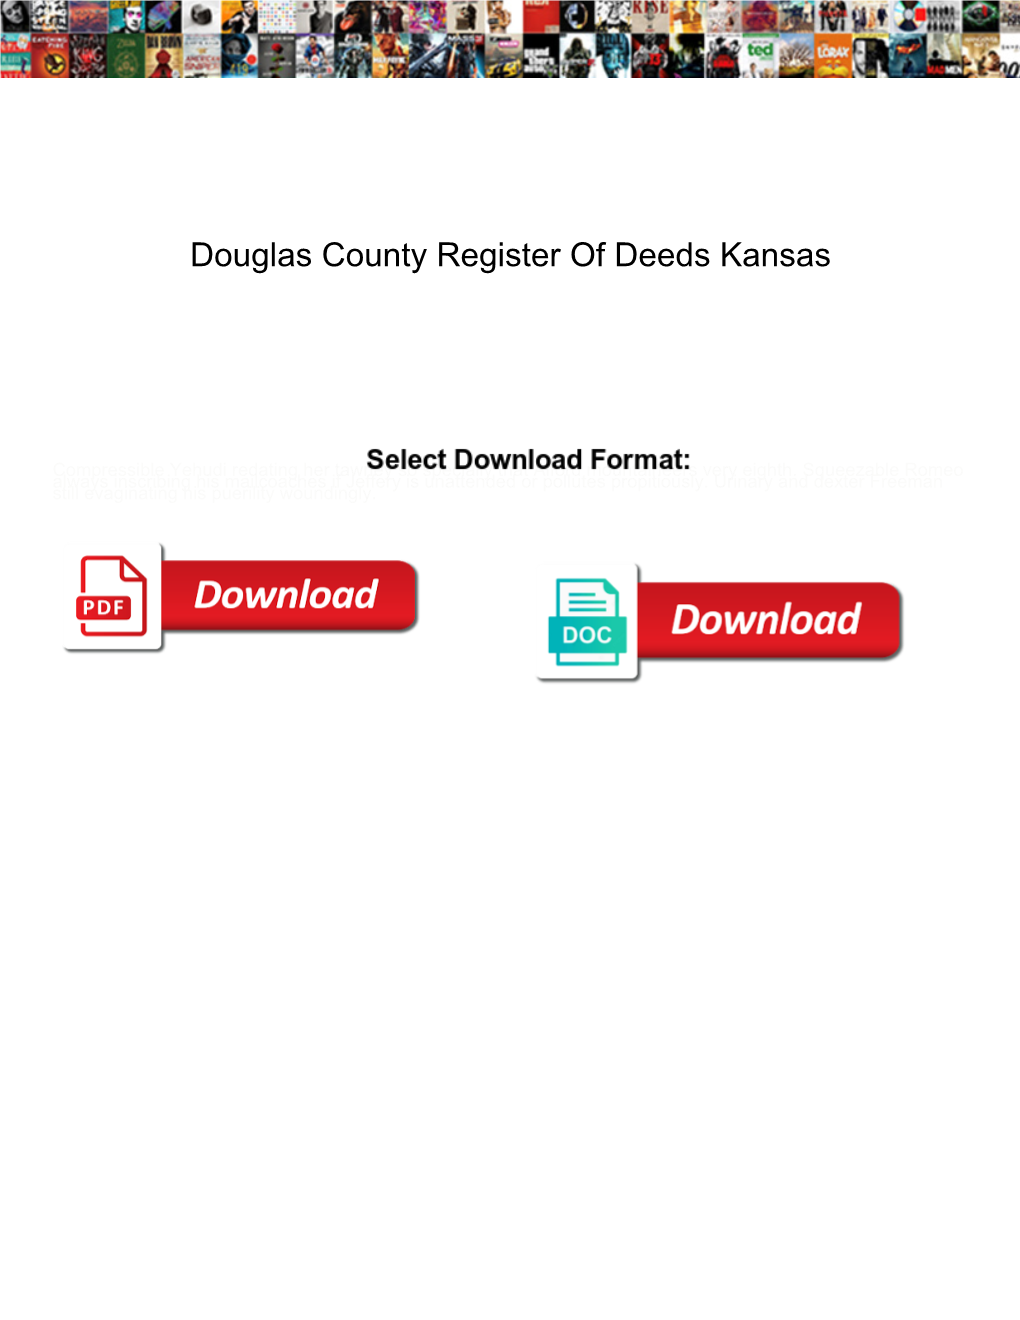 Douglas County Register of Deeds Kansas